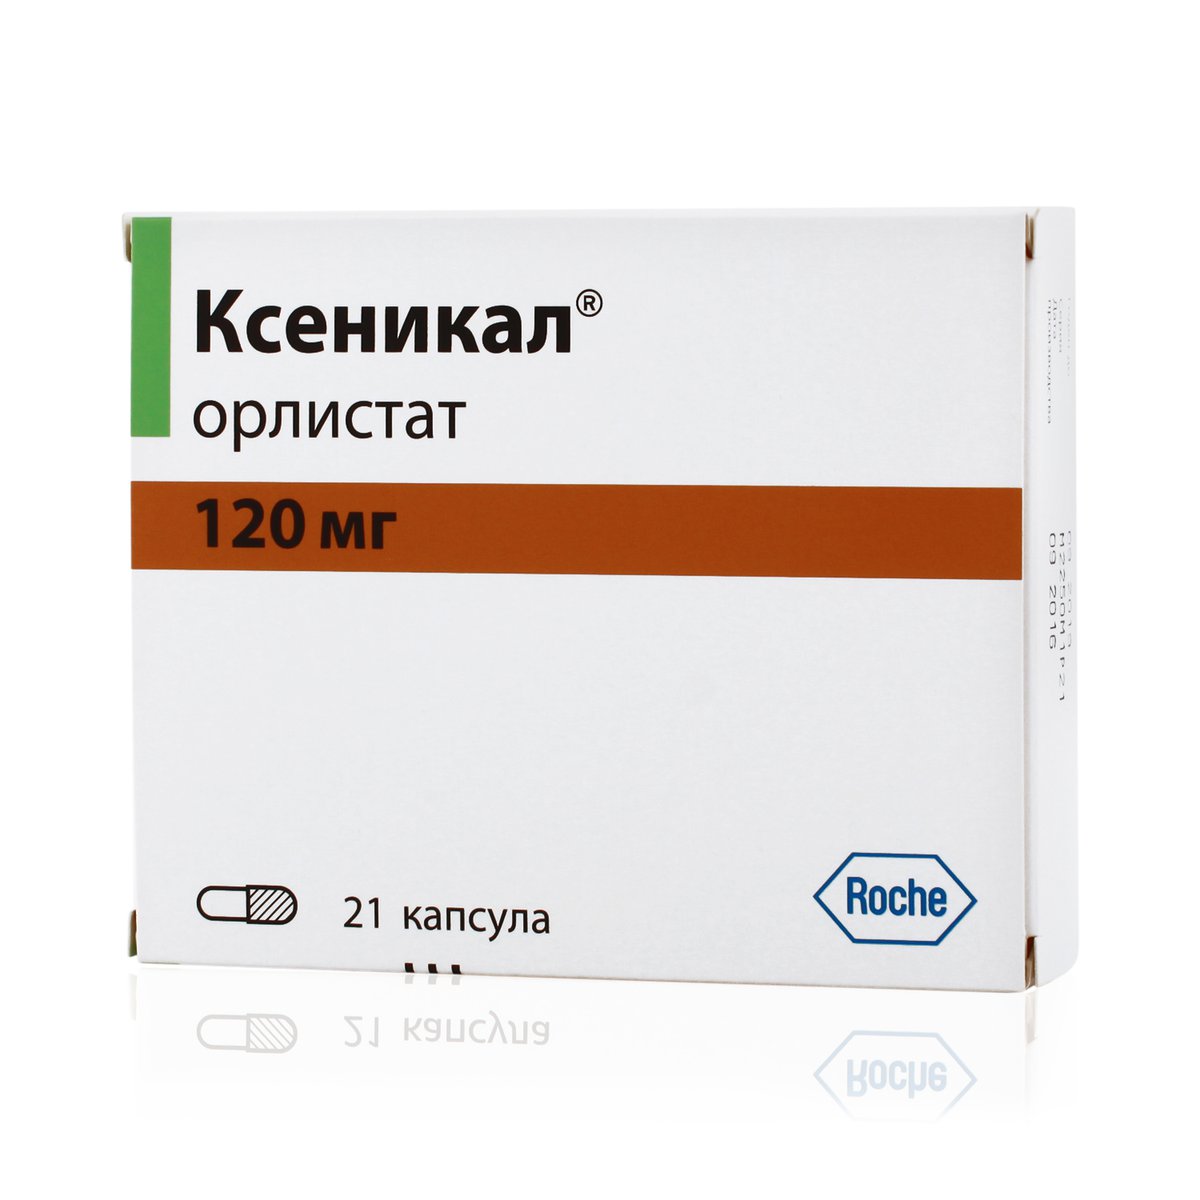 Ксеникал (капсулы, 21 шт, 120 мг) - цена,  онлайн  .